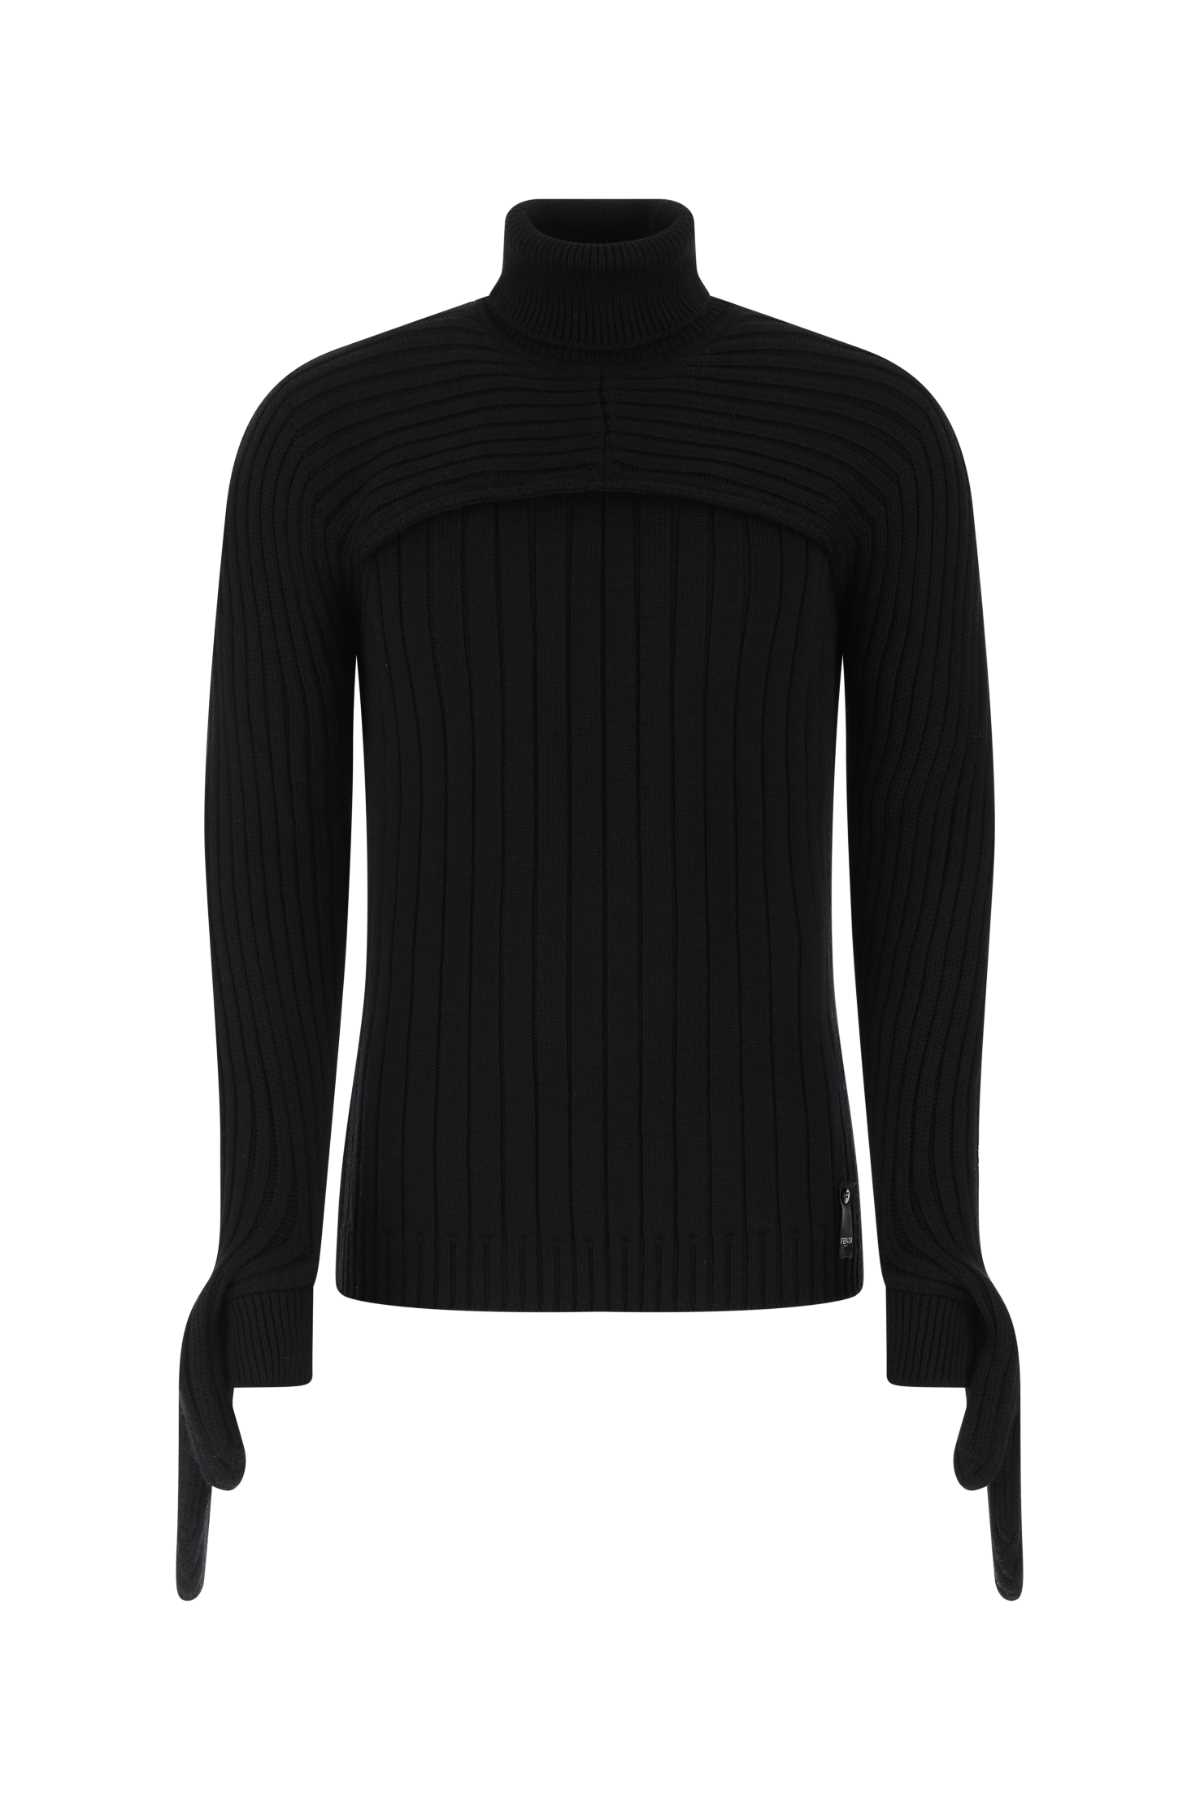 Fendi Black Wool Sweater In F0qa1